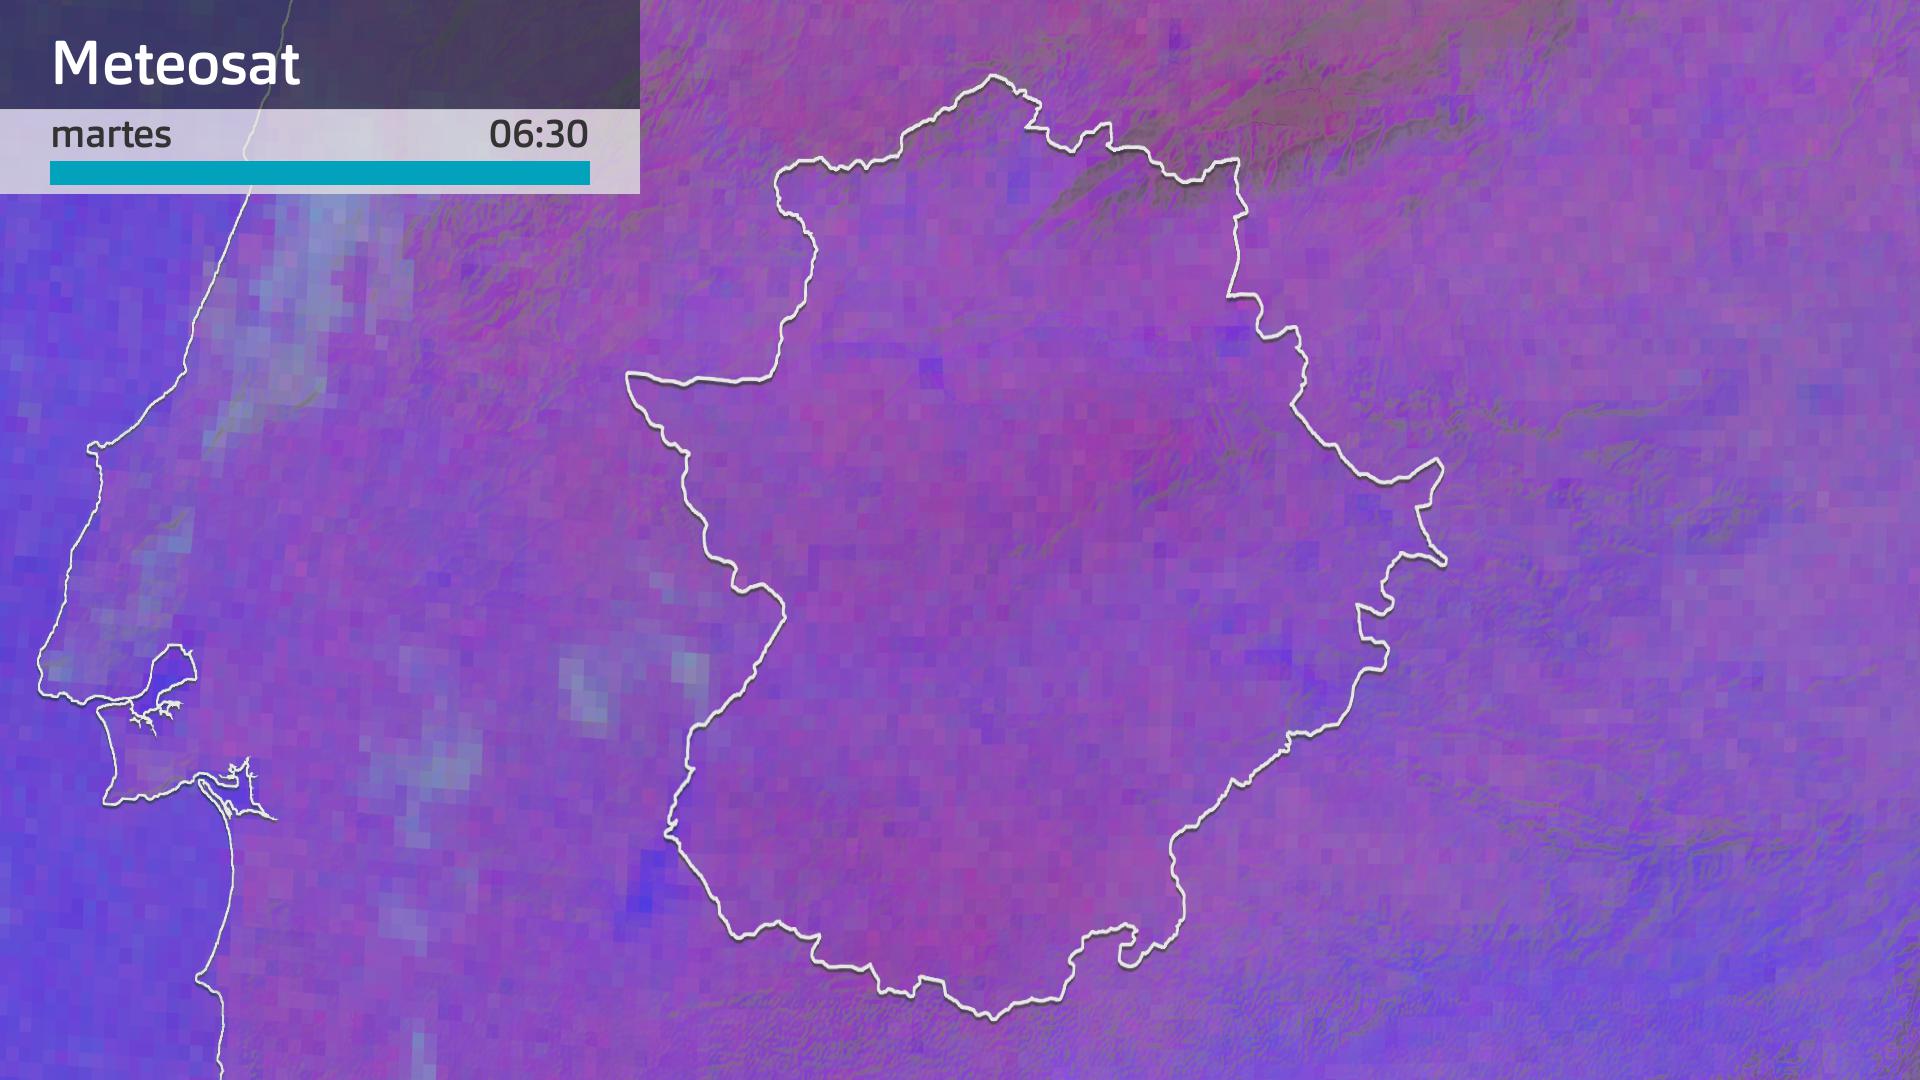 Imagen del Meteosat martes 16 de julio 6:30 h.